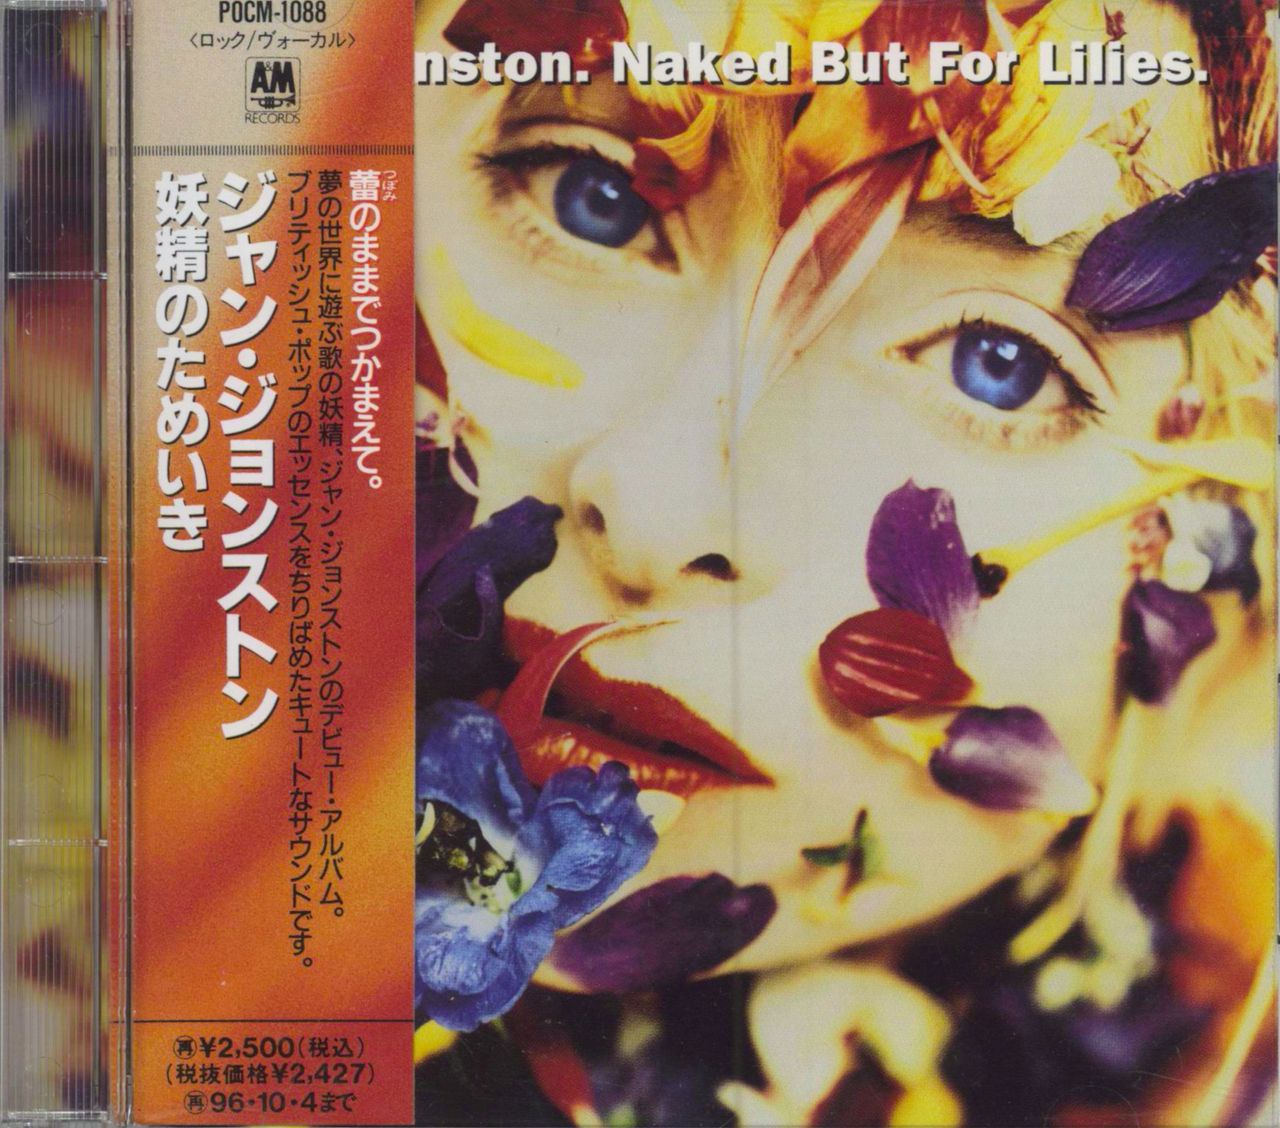 Jan Johnston Naked But For Lilies Japanese Promo CD album (CDLP) POCM-1088